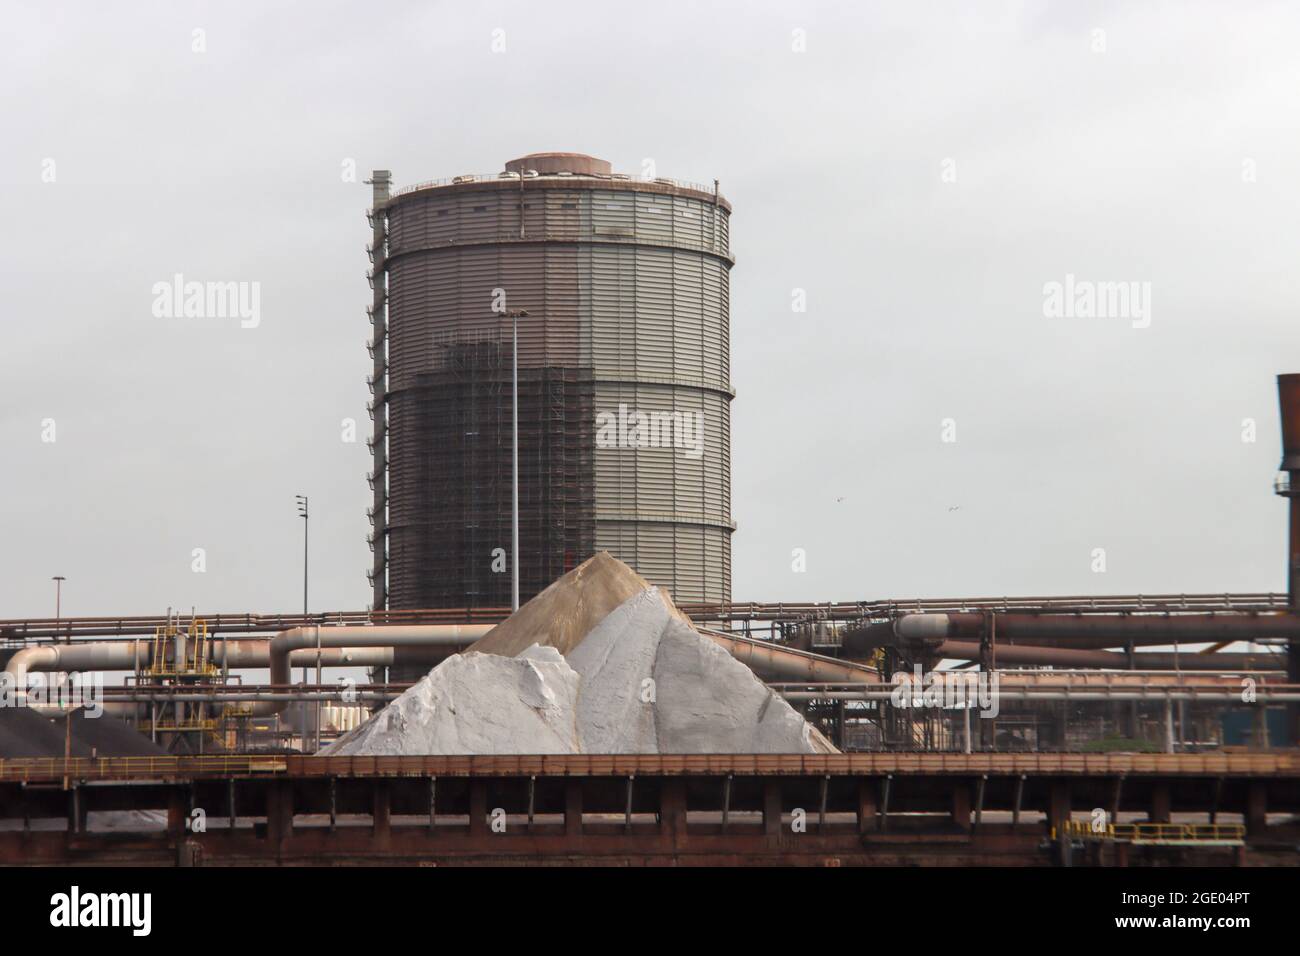 Reconsidera Tata Steel planes para planta de hidrógeno en Holanda